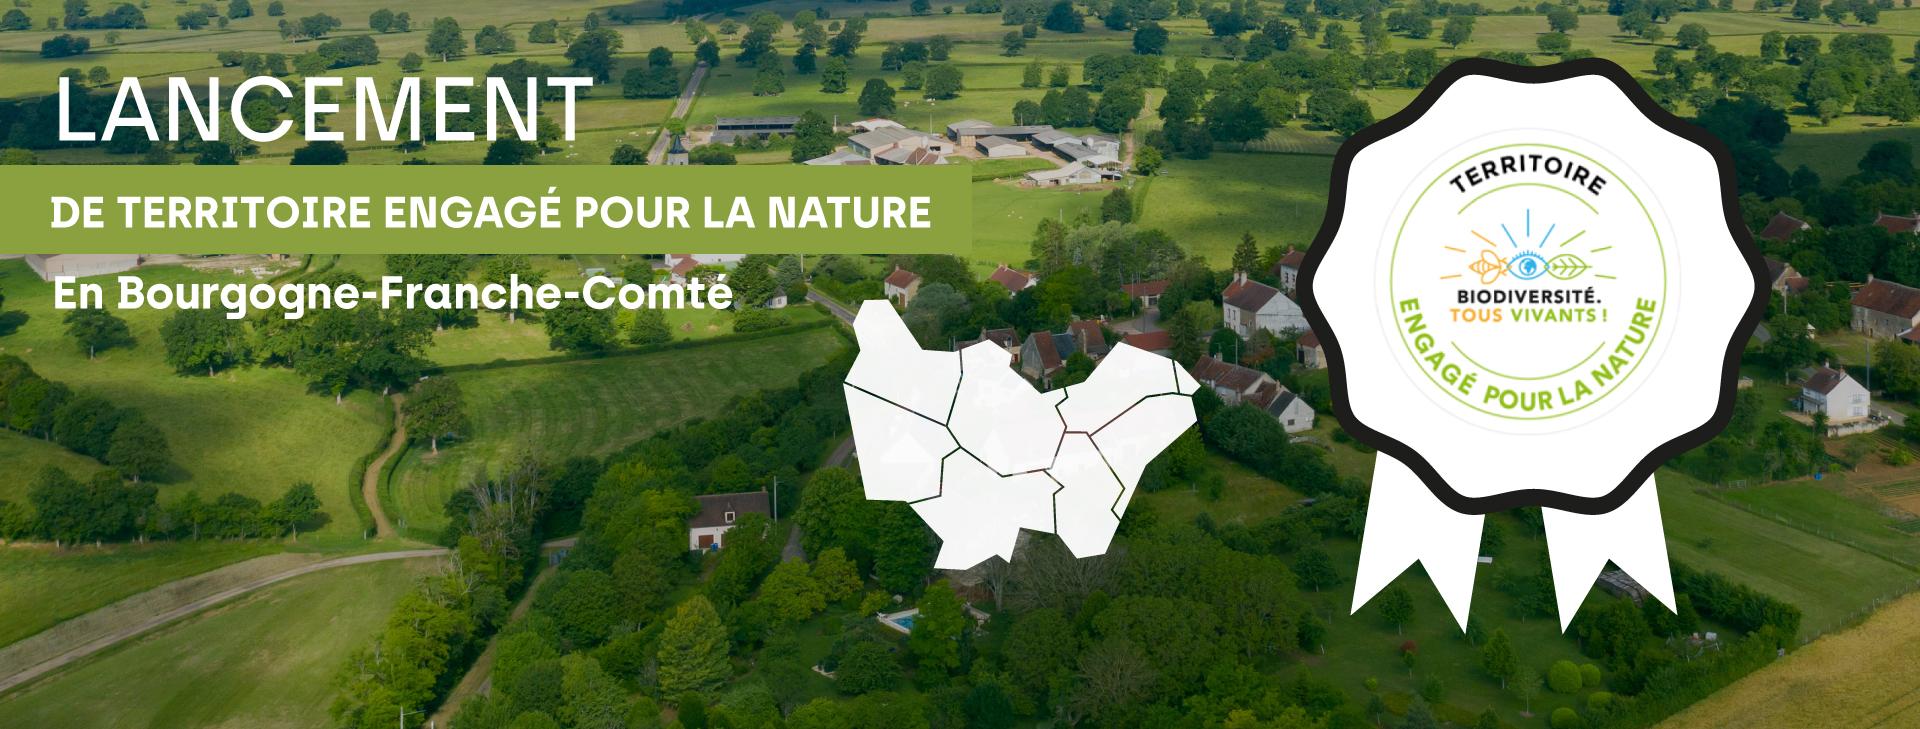 Den anden dag Forord dynamisk Les Territoires s'engagent en Bourgogne Franche Comté | Engagés pour la  nature